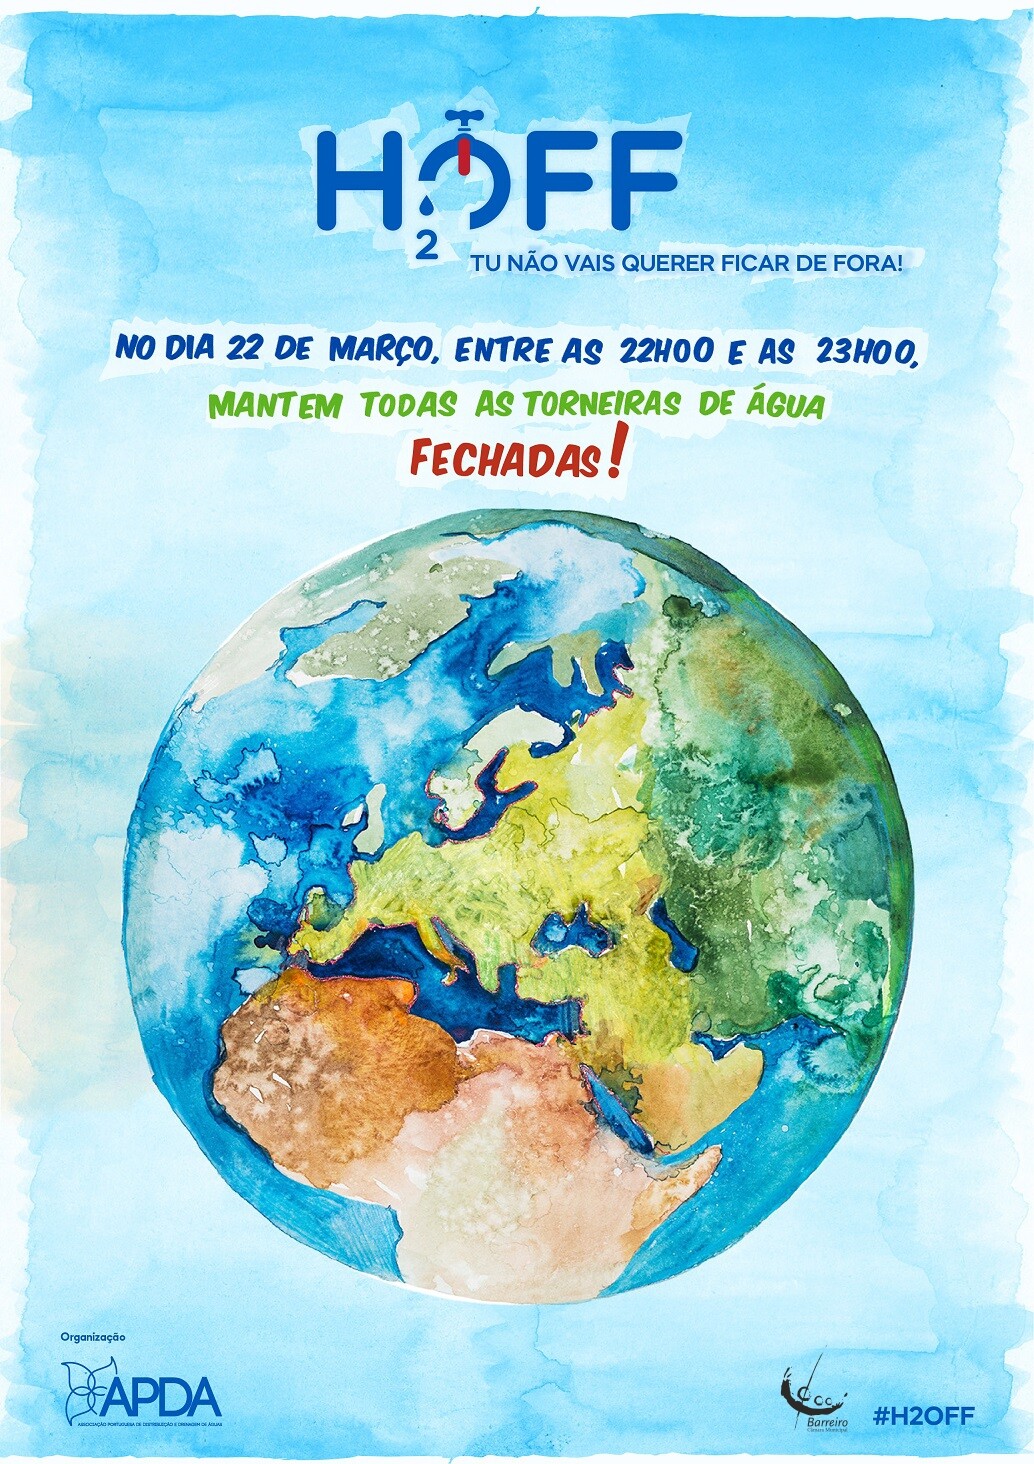 22 de março | 22h00 | O Município do Barreiro celebra o “Dia Mundial da Água” associando-se à 2º edição do H2Off – “Hora de Fechar a Torneira”